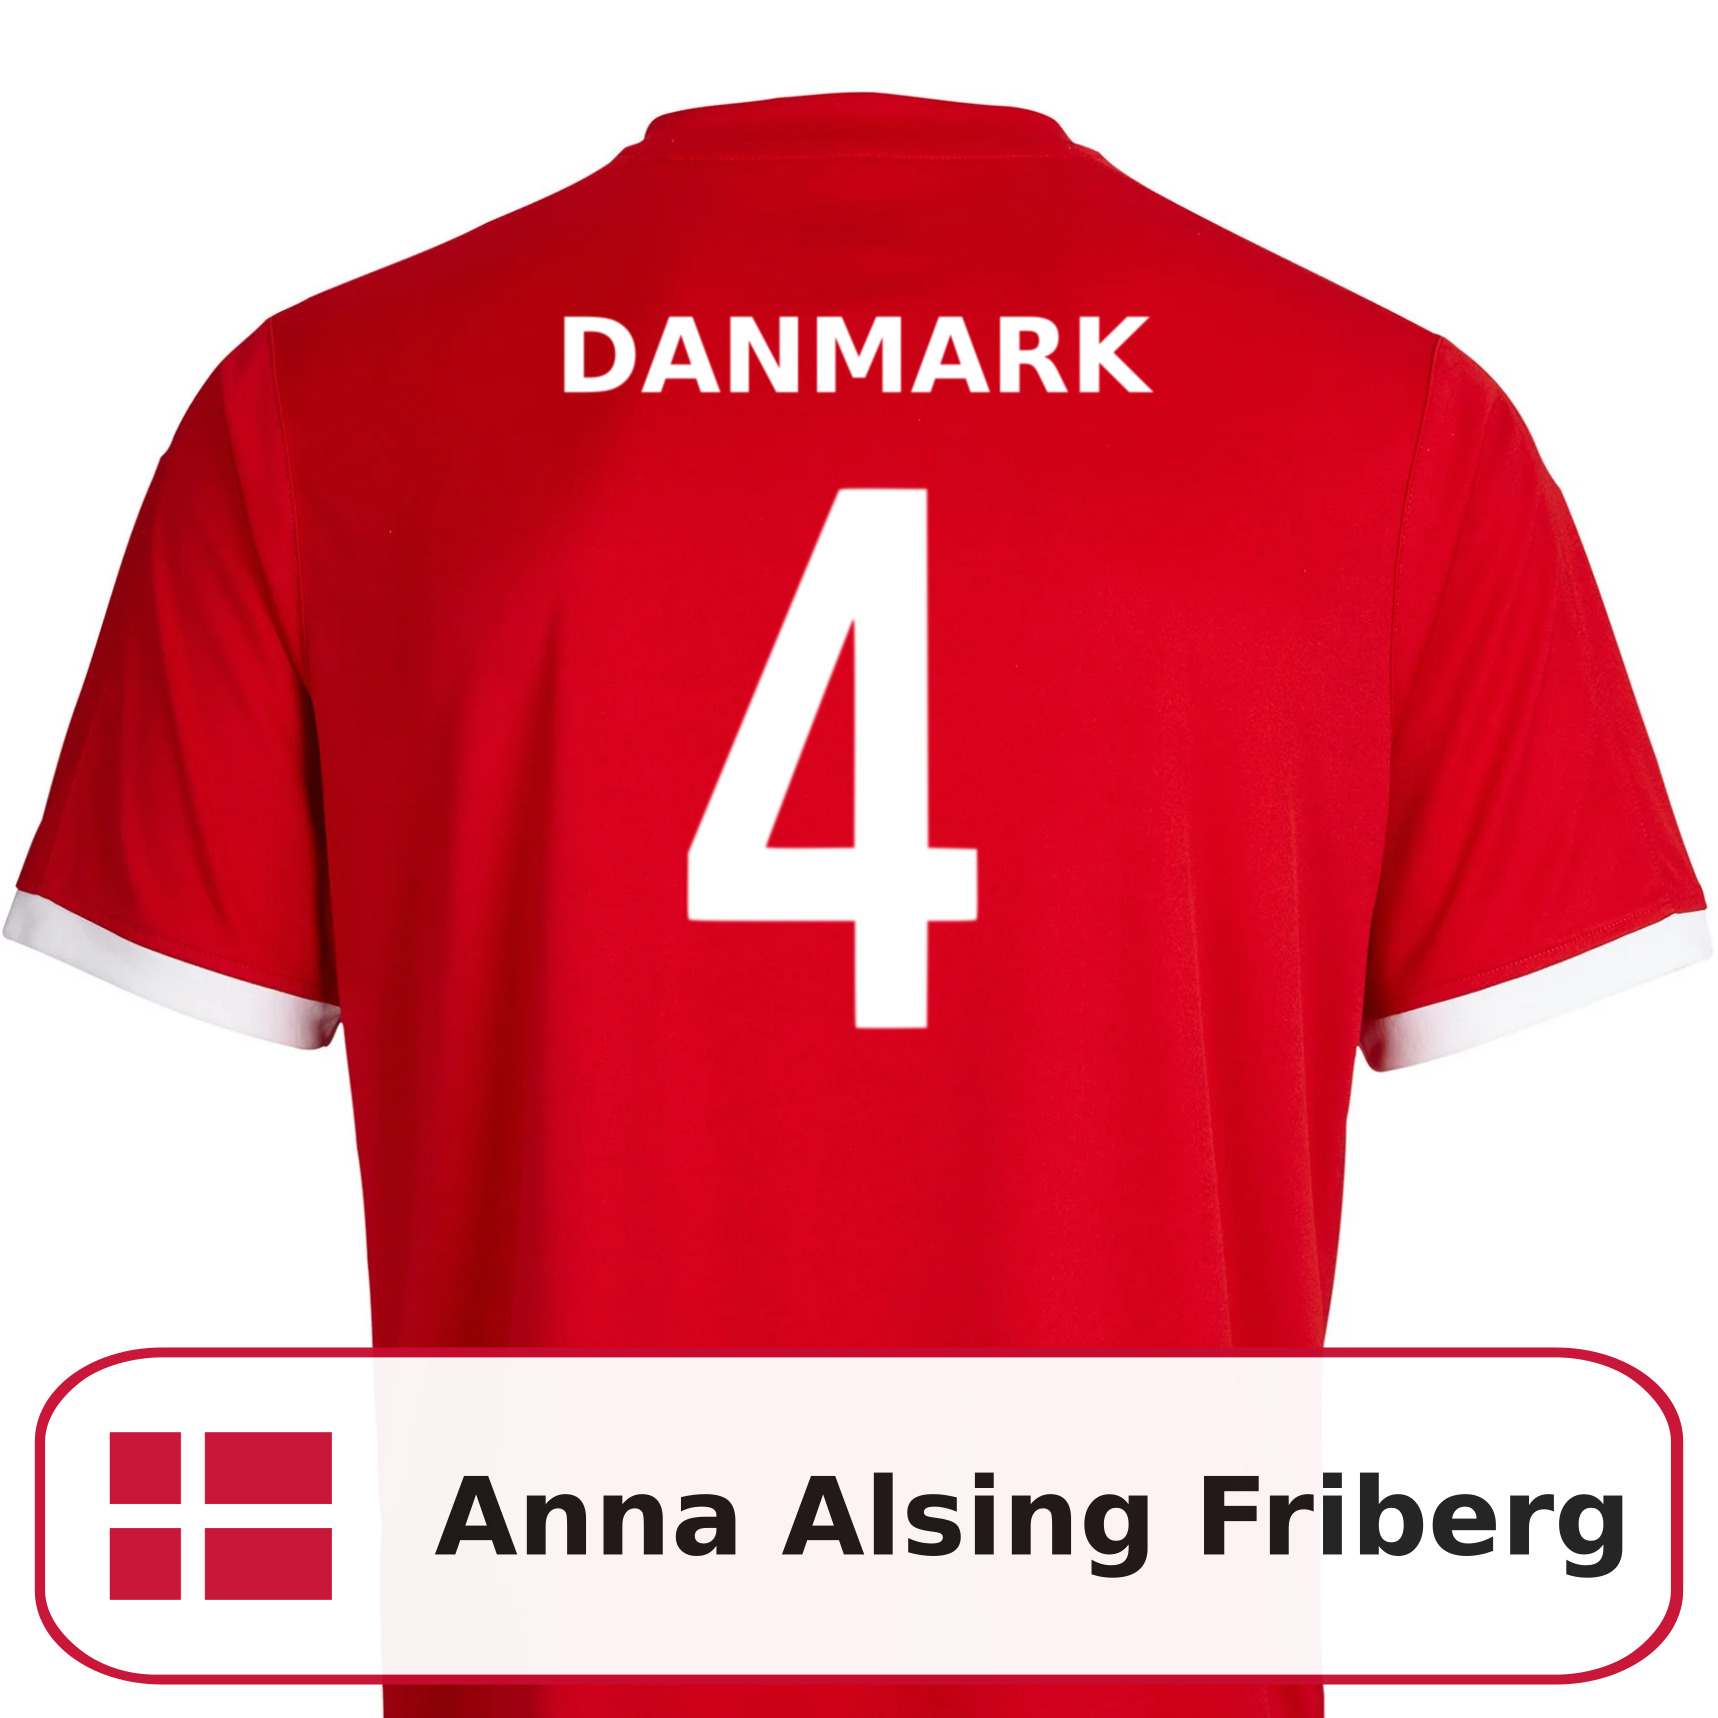 Anna Alsing Friberg